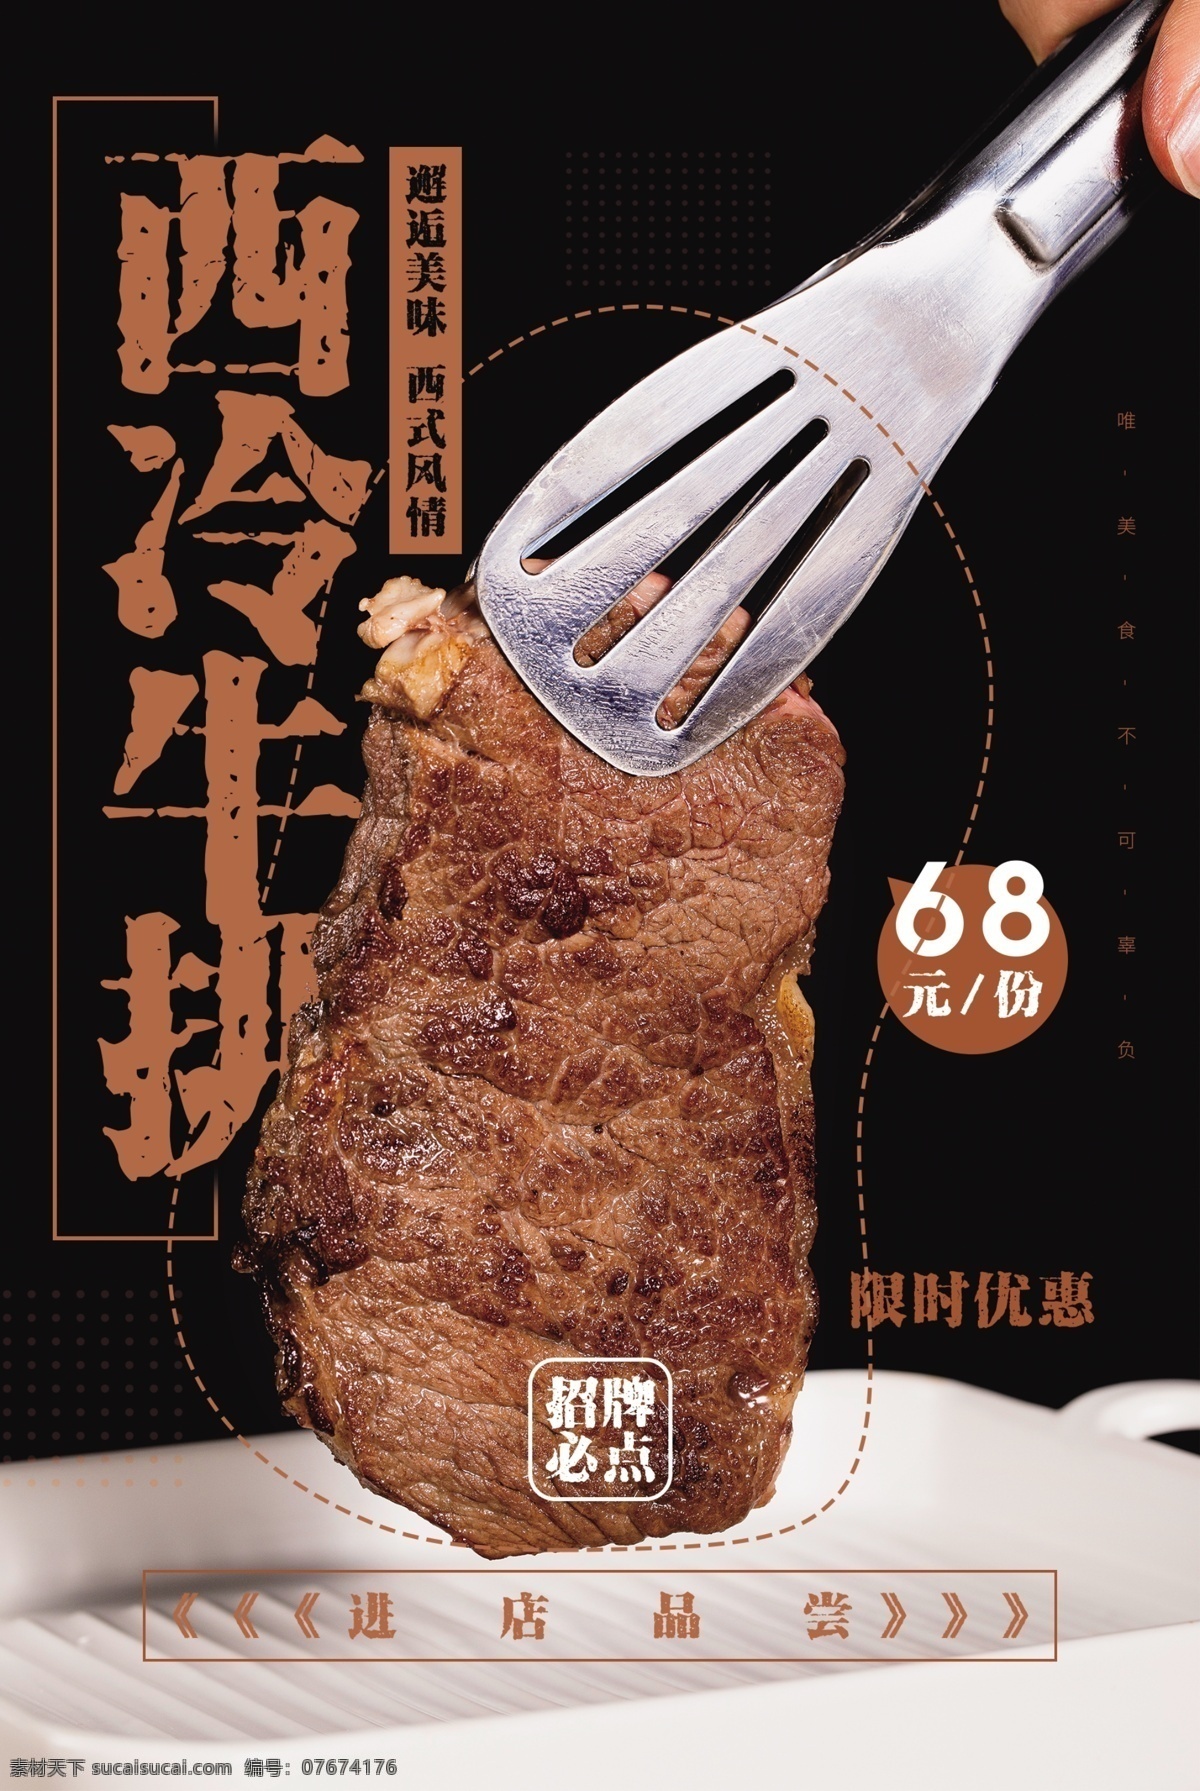 西 冷 牛排 美食 活动 宣传海报 素材图片 西冷牛排 宣传 海报 餐饮美食 类